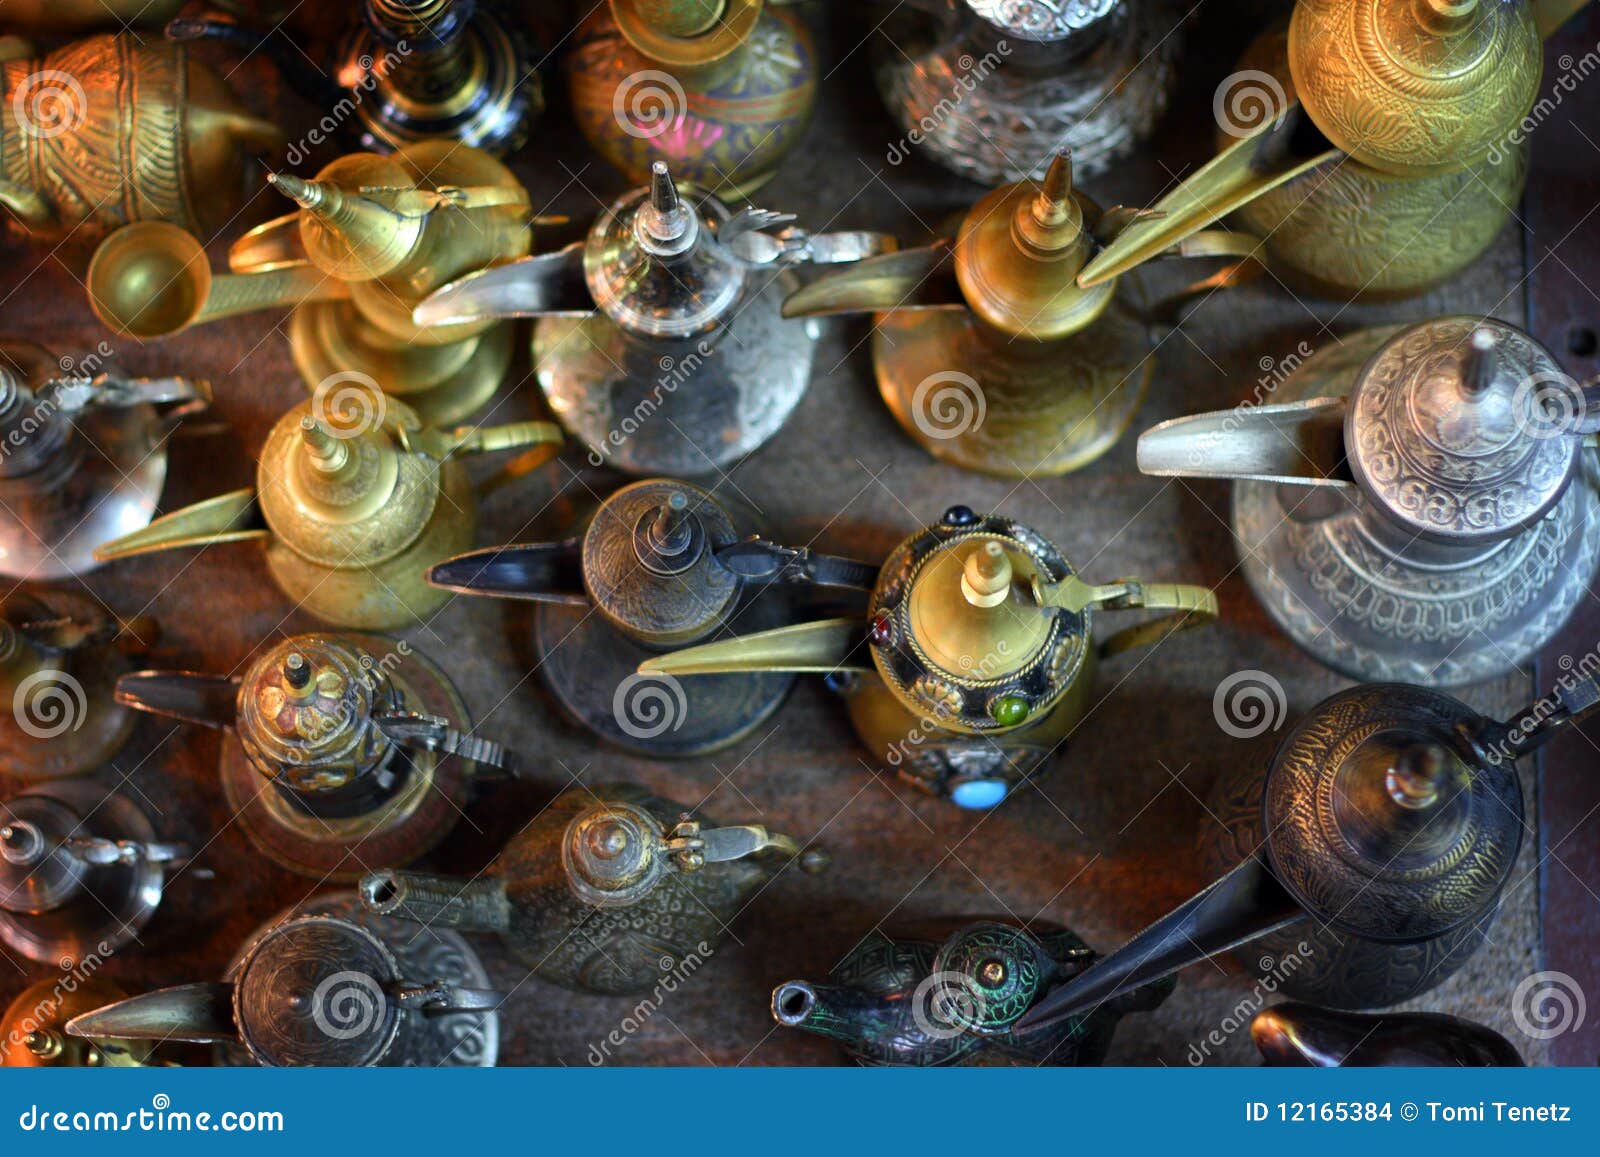 oman: arabic coffee pots in mutrah souk